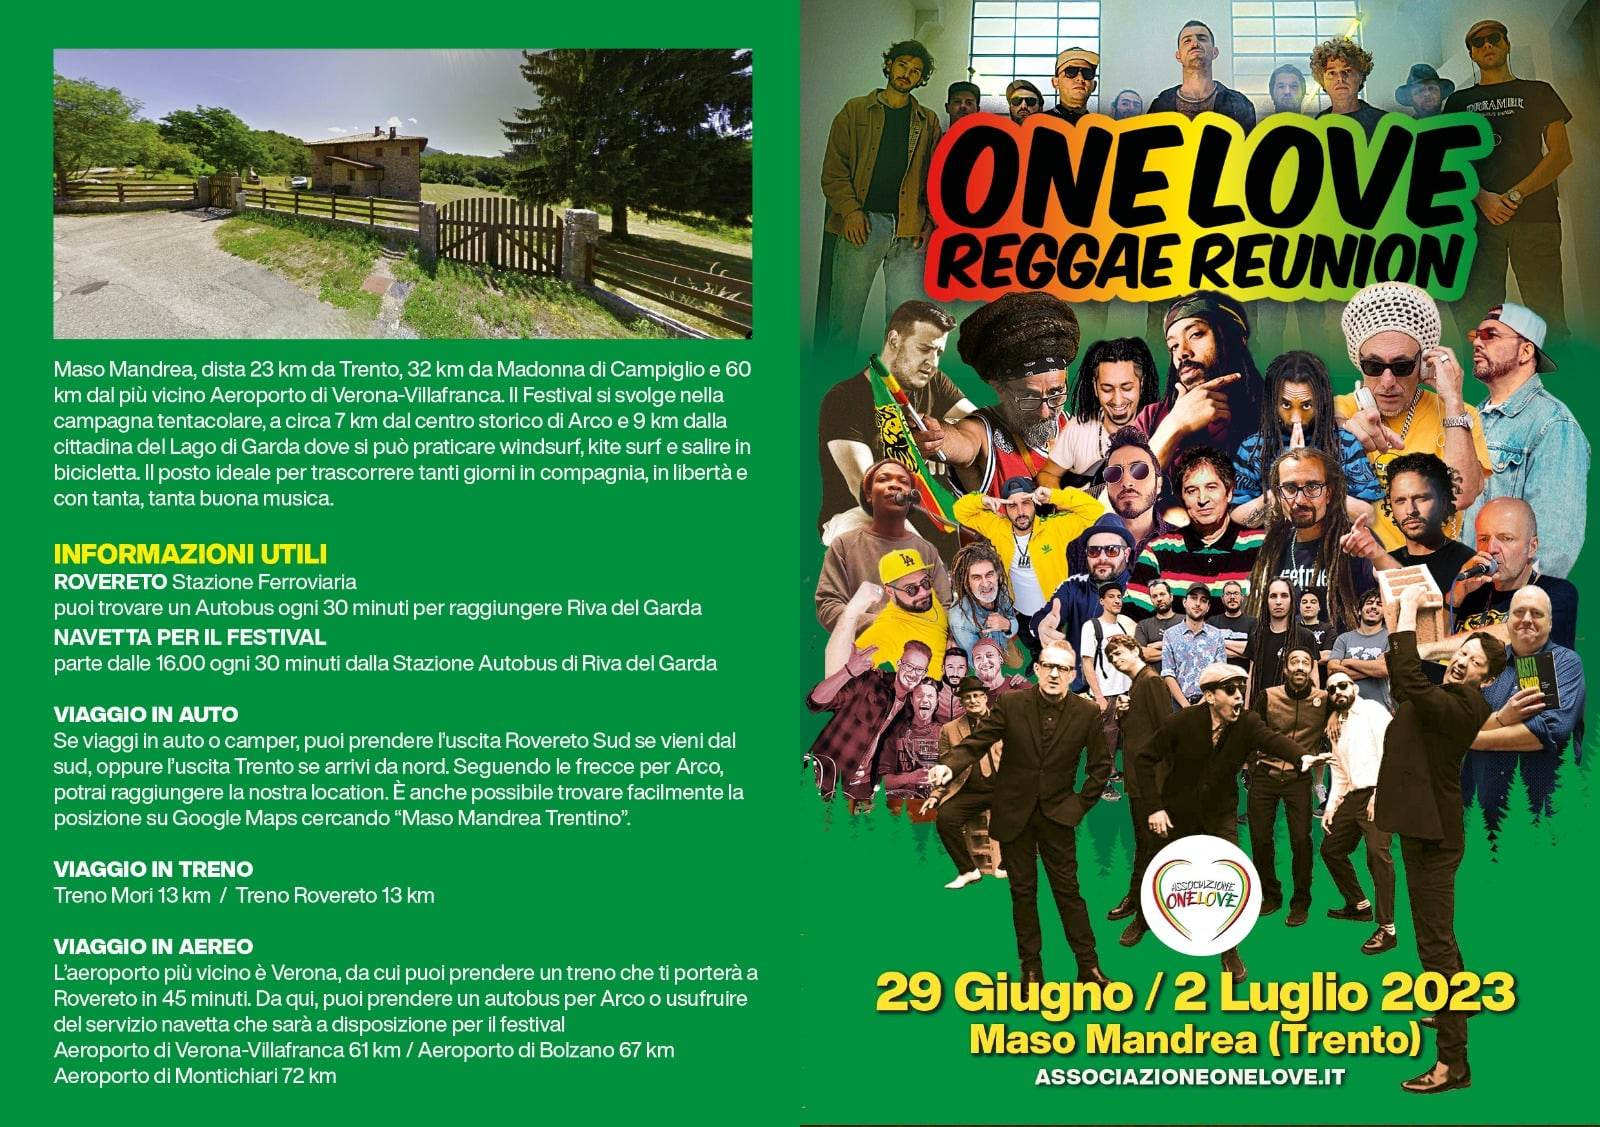 Torna il One Love Reggae Reunion, il festival reggae italiano che giunge alla sua terza edizione con un cambio di location